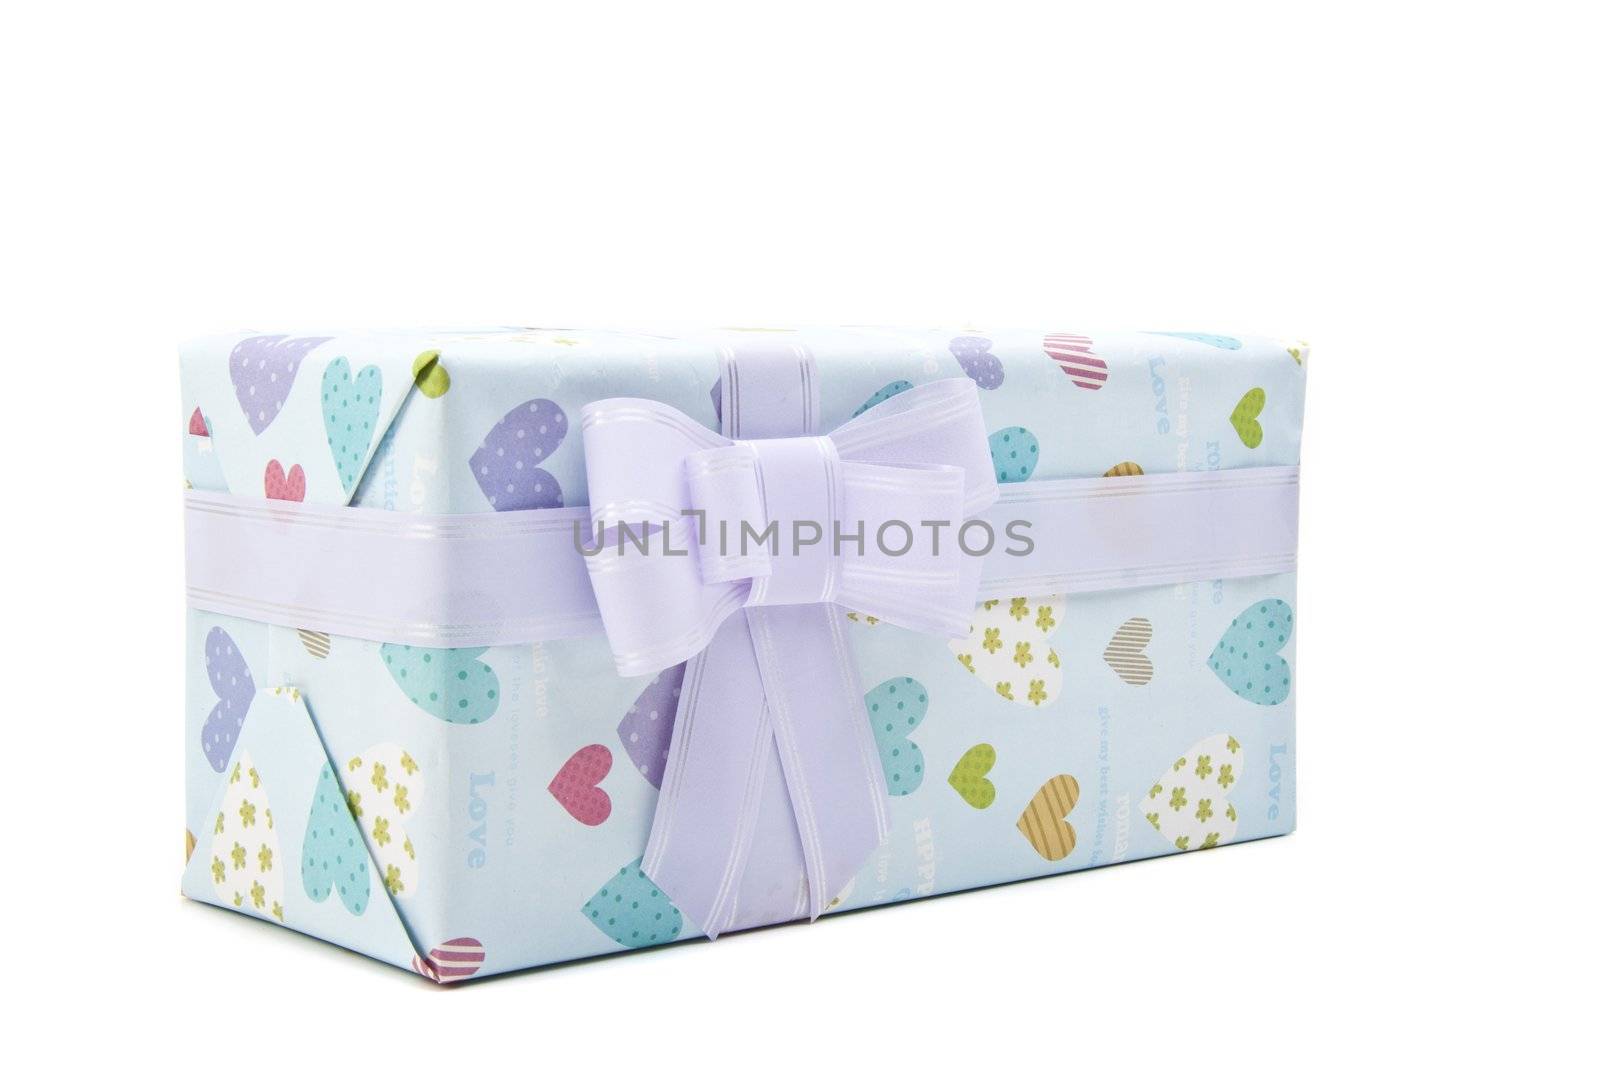  gift box by ozaiachin